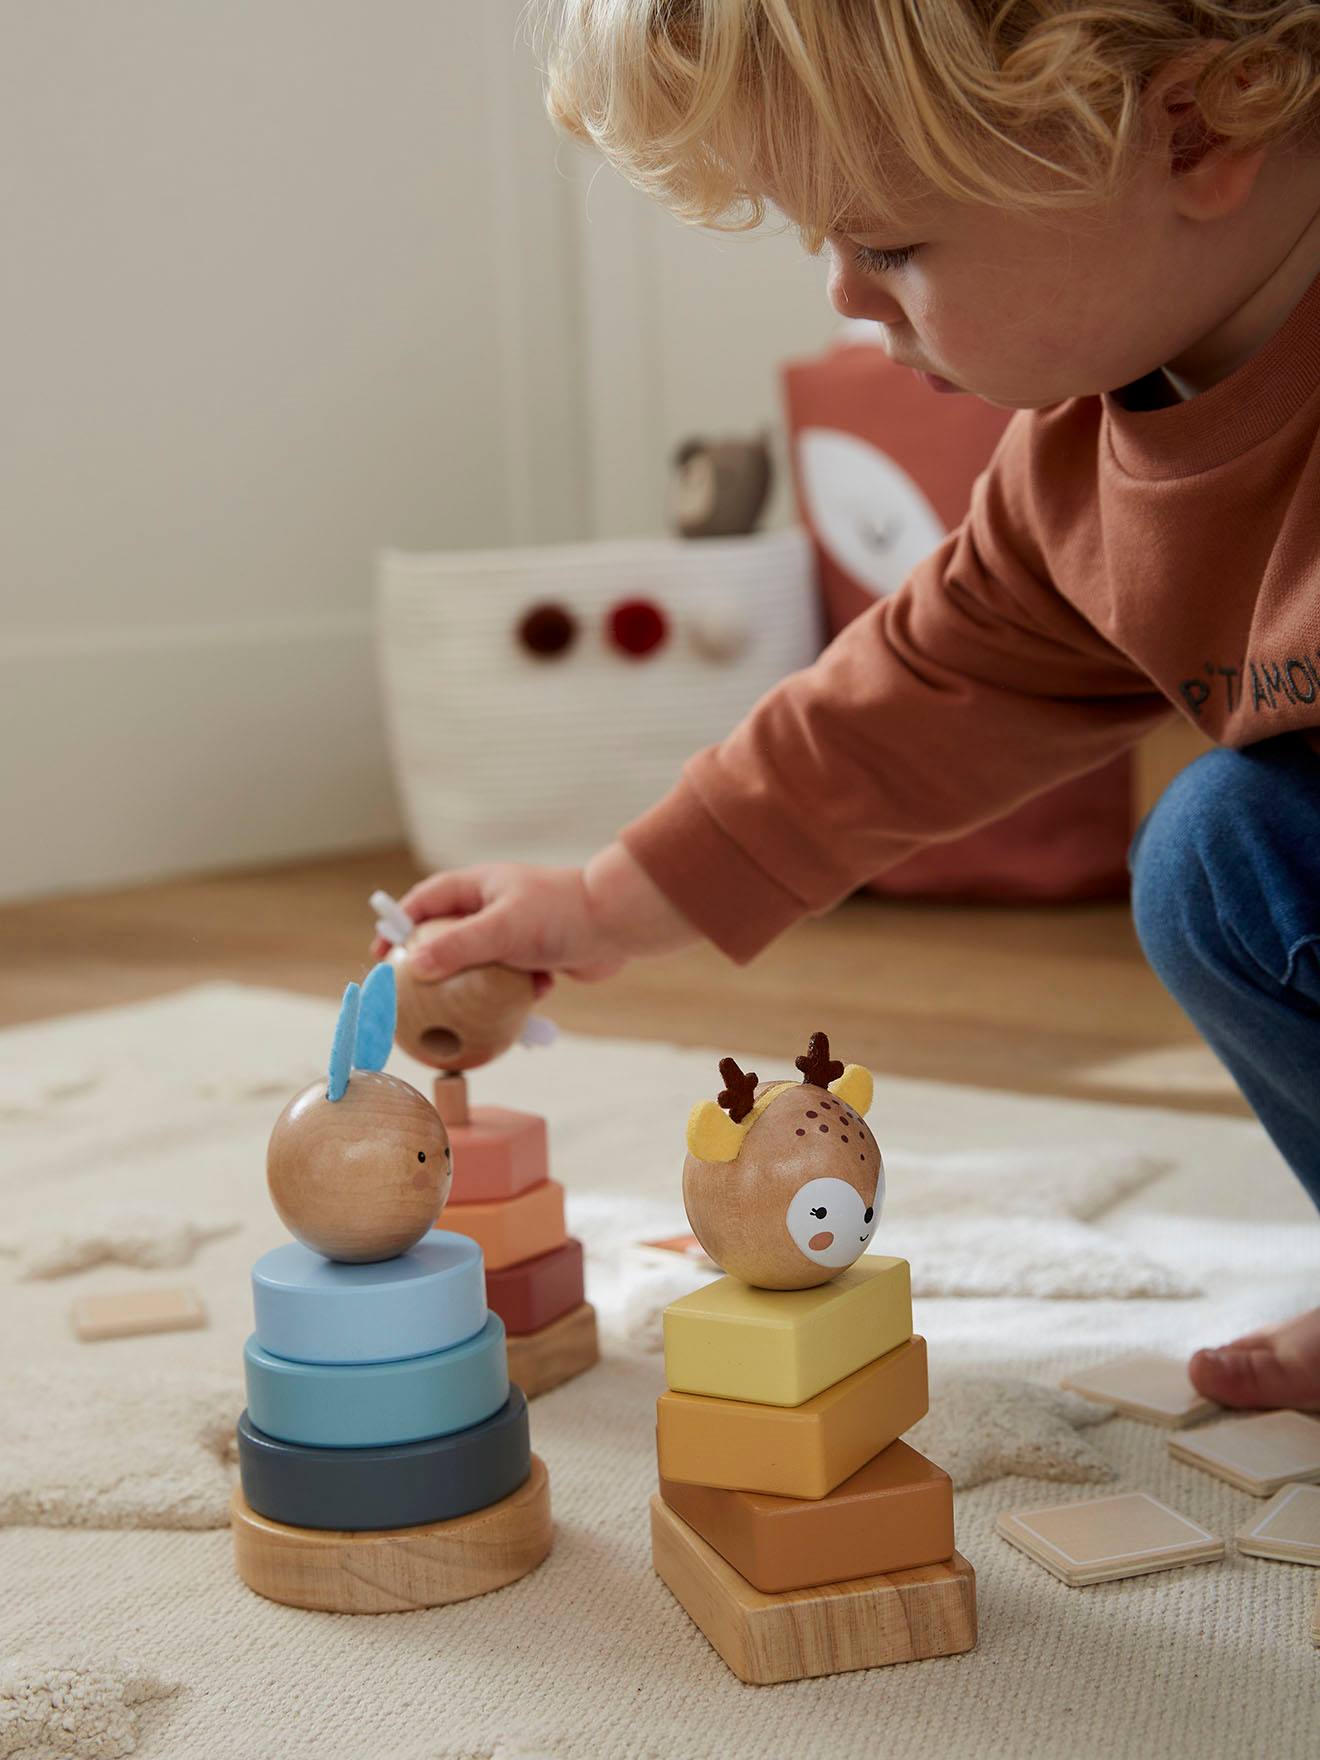 Empilhamento de brinquedo de madeira de jogo de torre para crianças de 3 a  9 anos